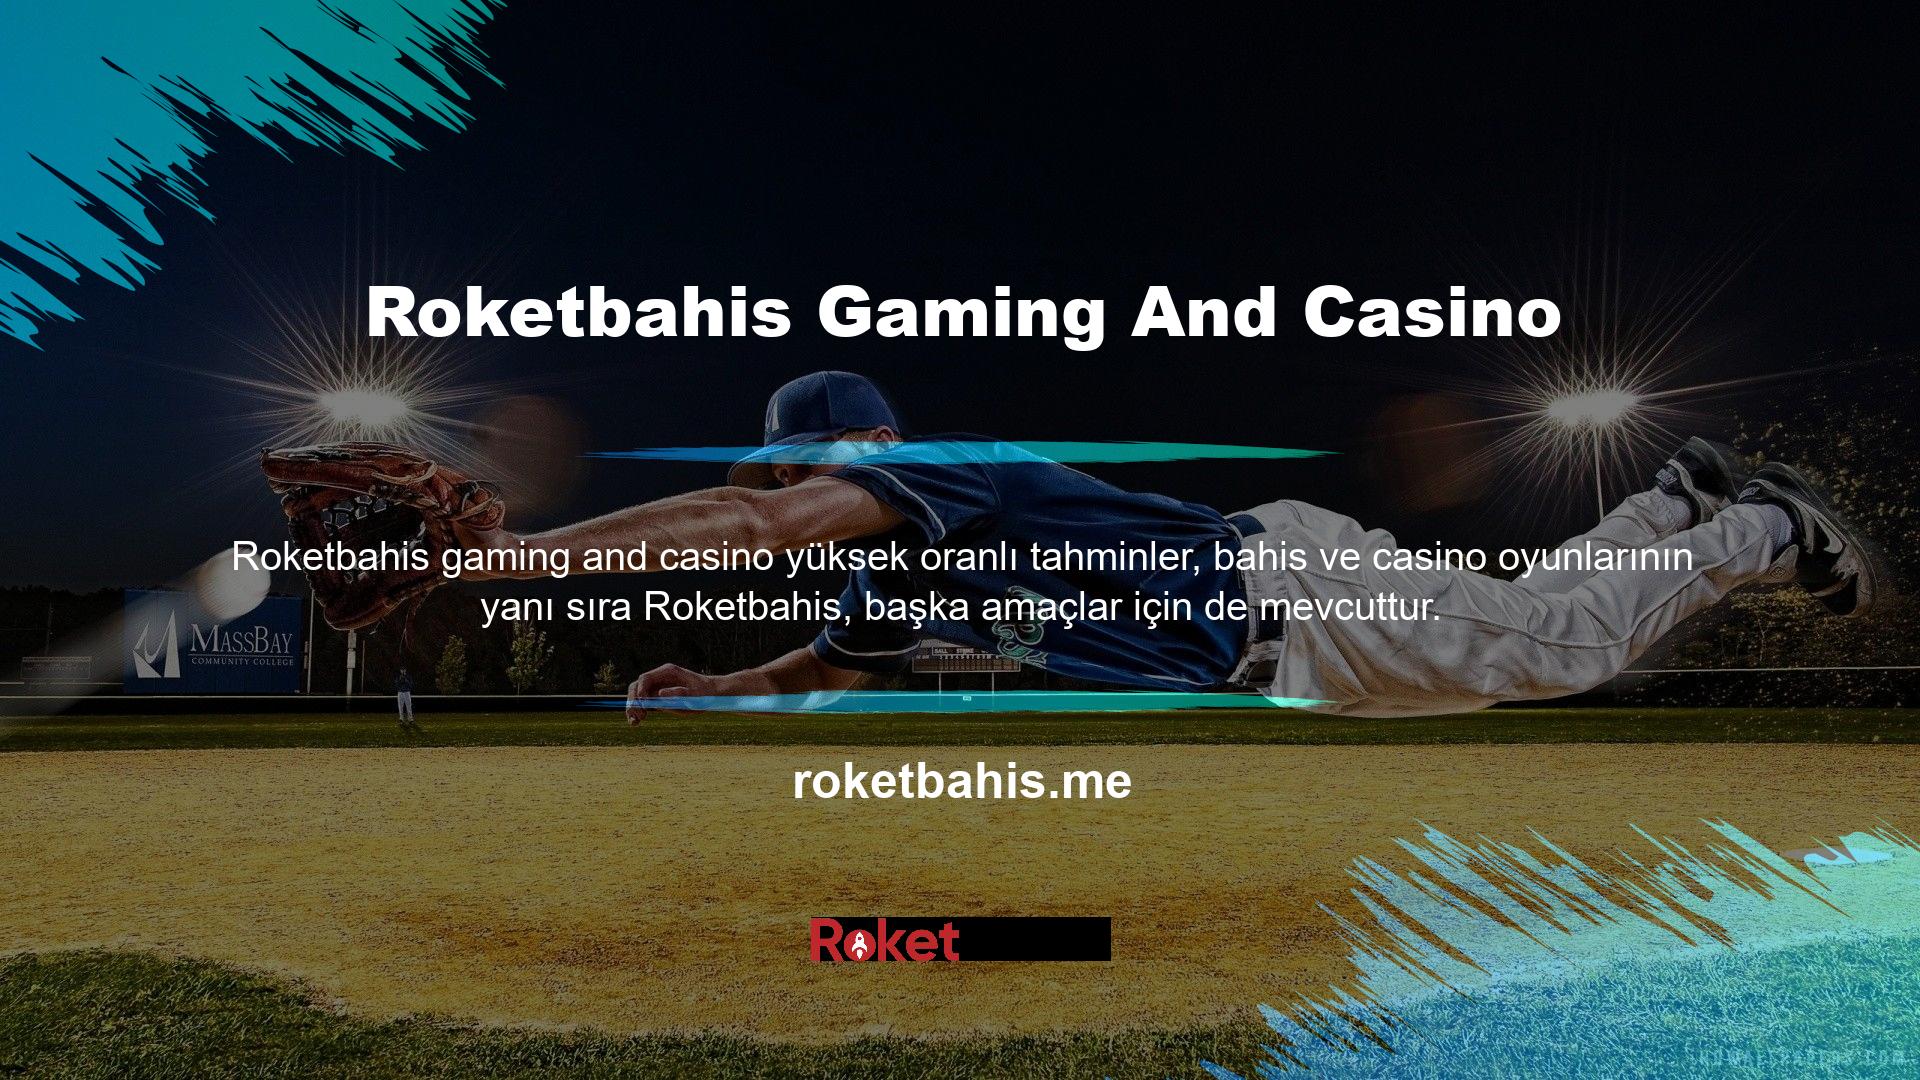 Daha önce de belirttiğimiz gibi Roketbahis Gaming and Casino dışında başka hangi oyunlar oynanabilir? Soruları yanıtlarken, poker alternatiflerinin yanı sıra slotlar ve canlı slotlar gibi gerçek parayla oynanan oyun türleri de var